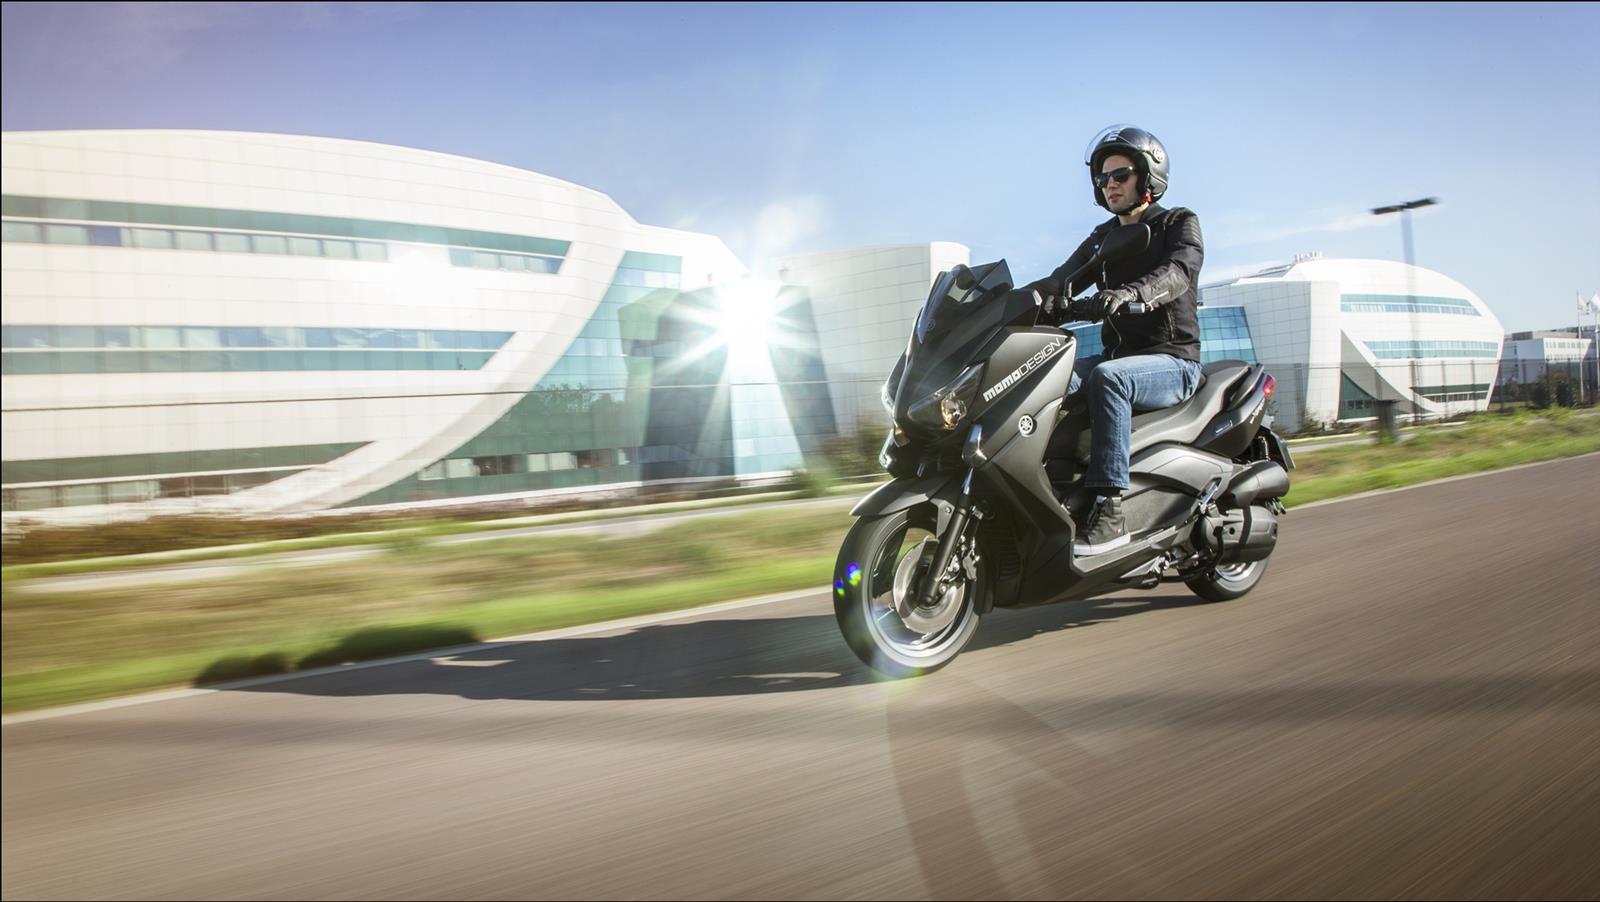 Disegna i tuoi percorsi. La gamma Yamaha di scooter sportivi X-MAX abbina al glamour una qualità superiore. Un concetto che raggiunge nuovi standard, ancora più elevati.